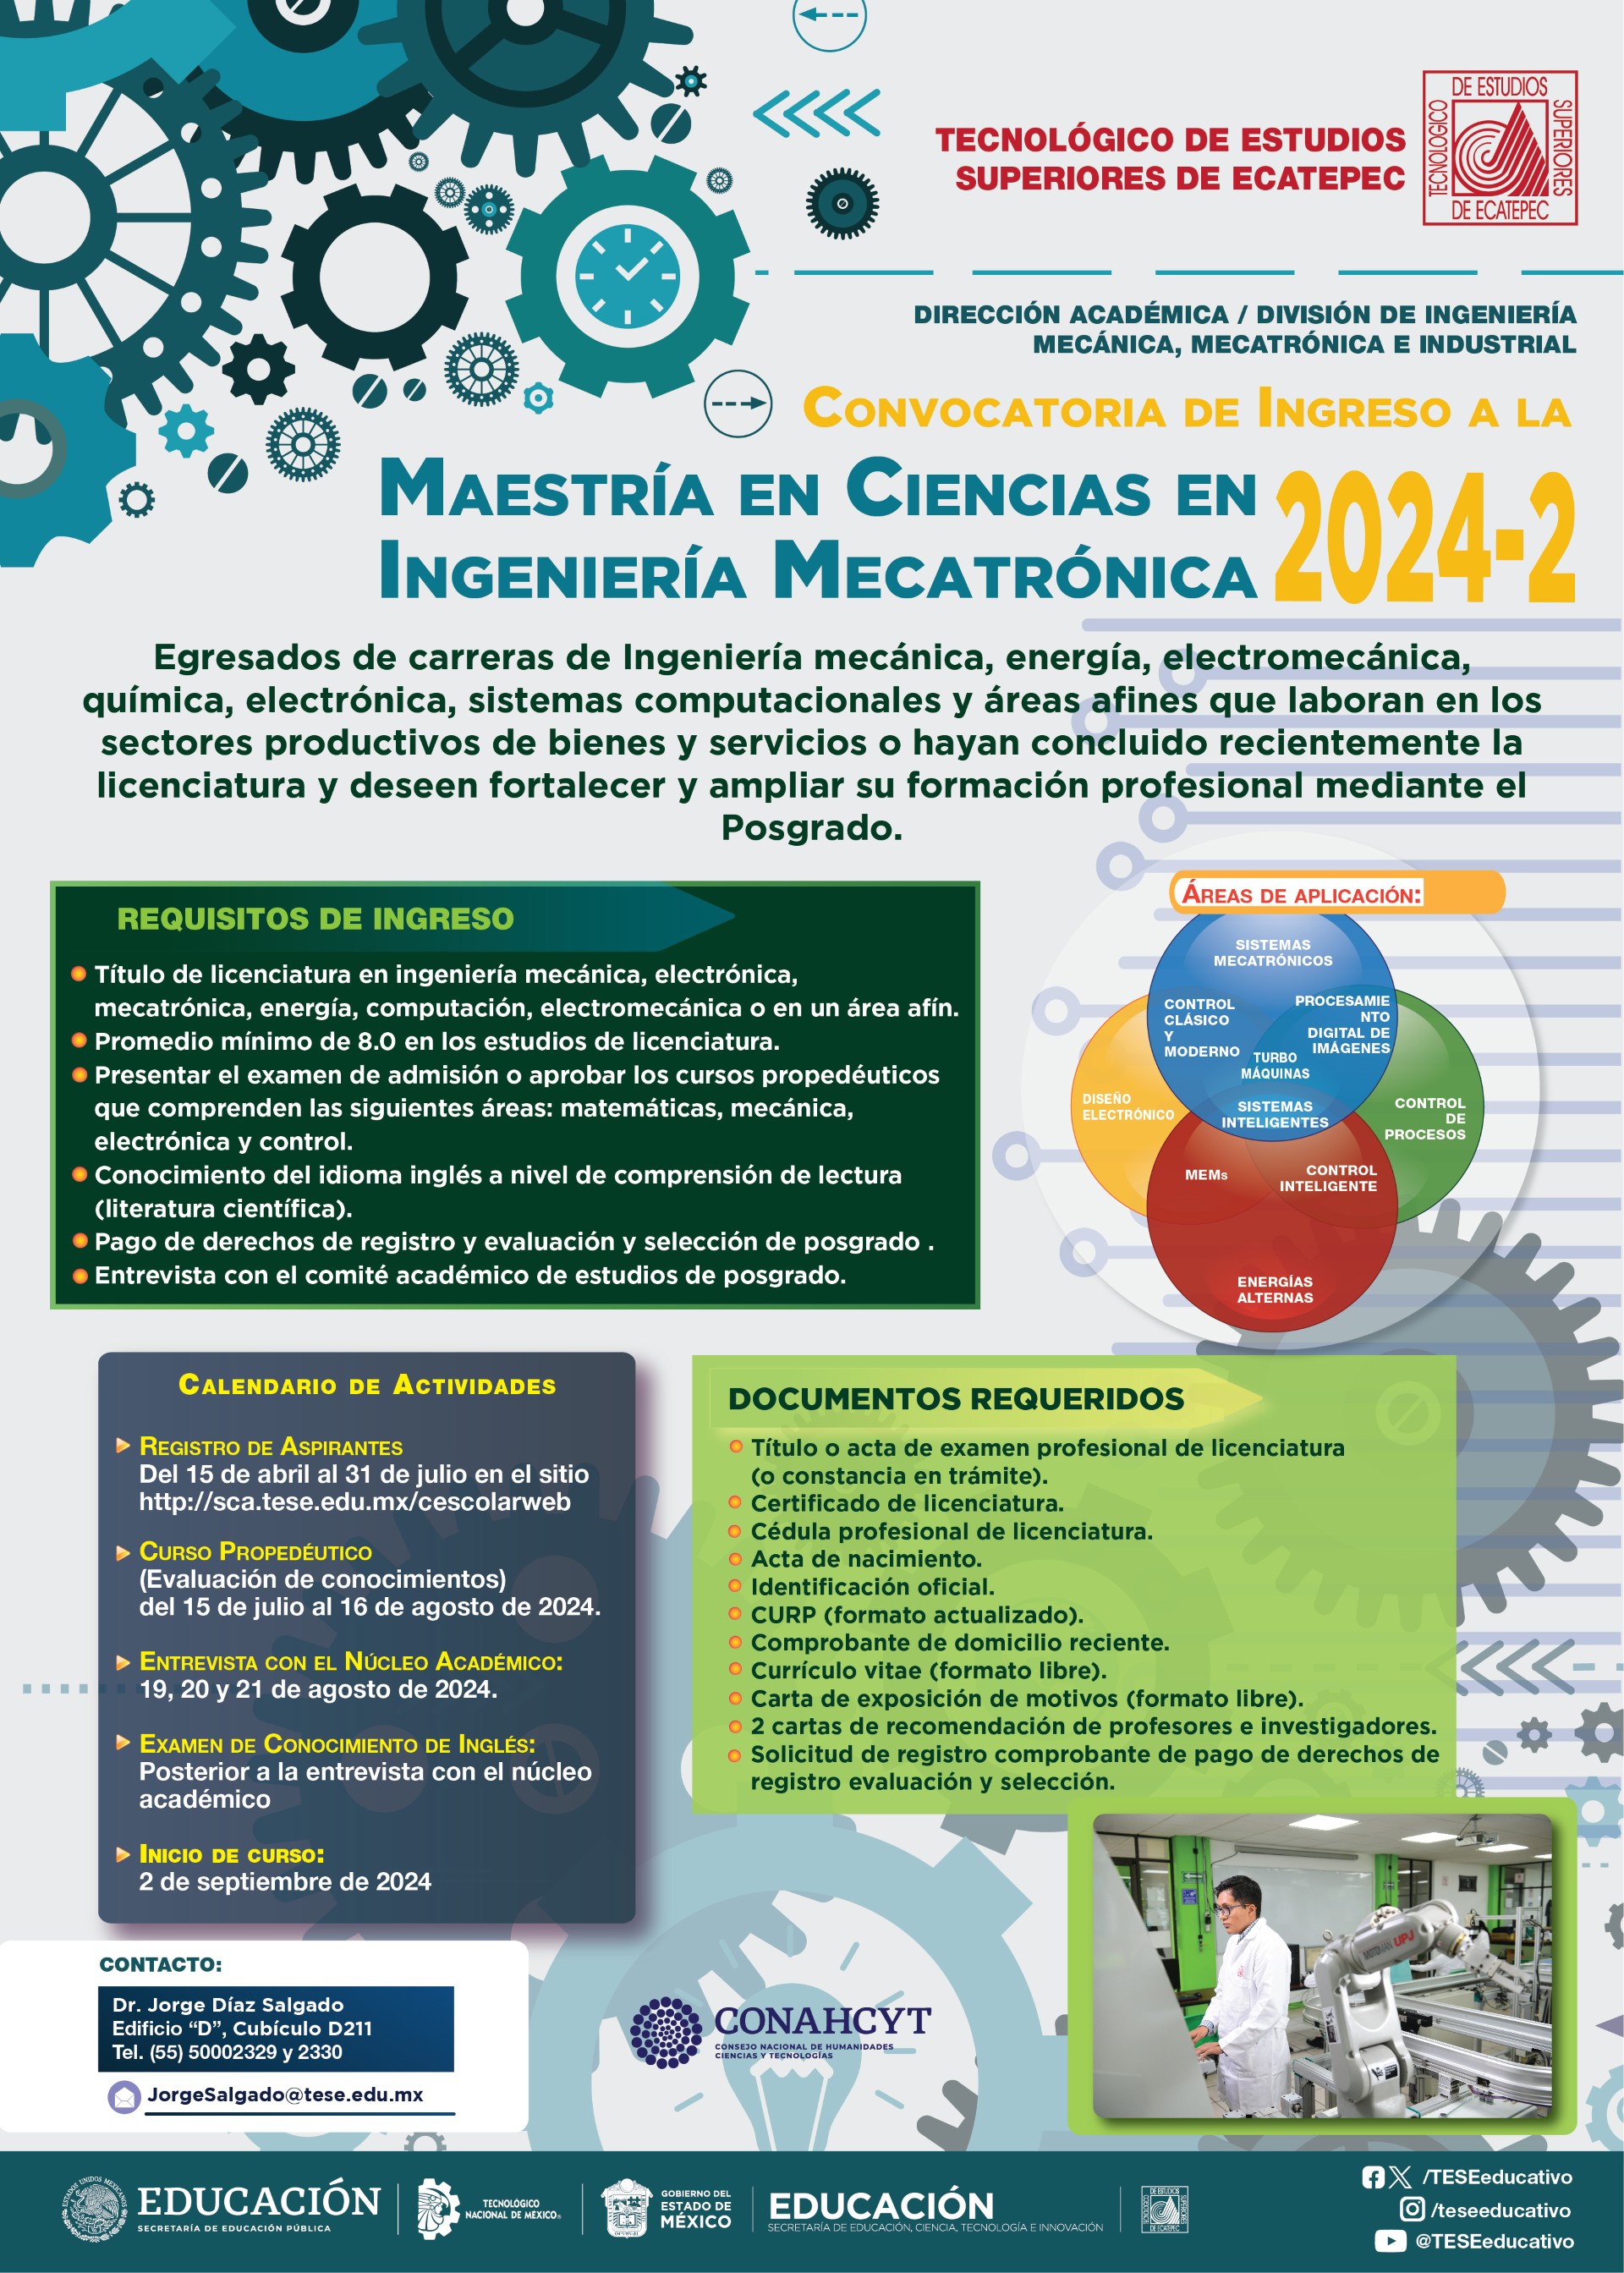 Maestría en Ciencias en Ingeniería Mecatrónica 2024-2